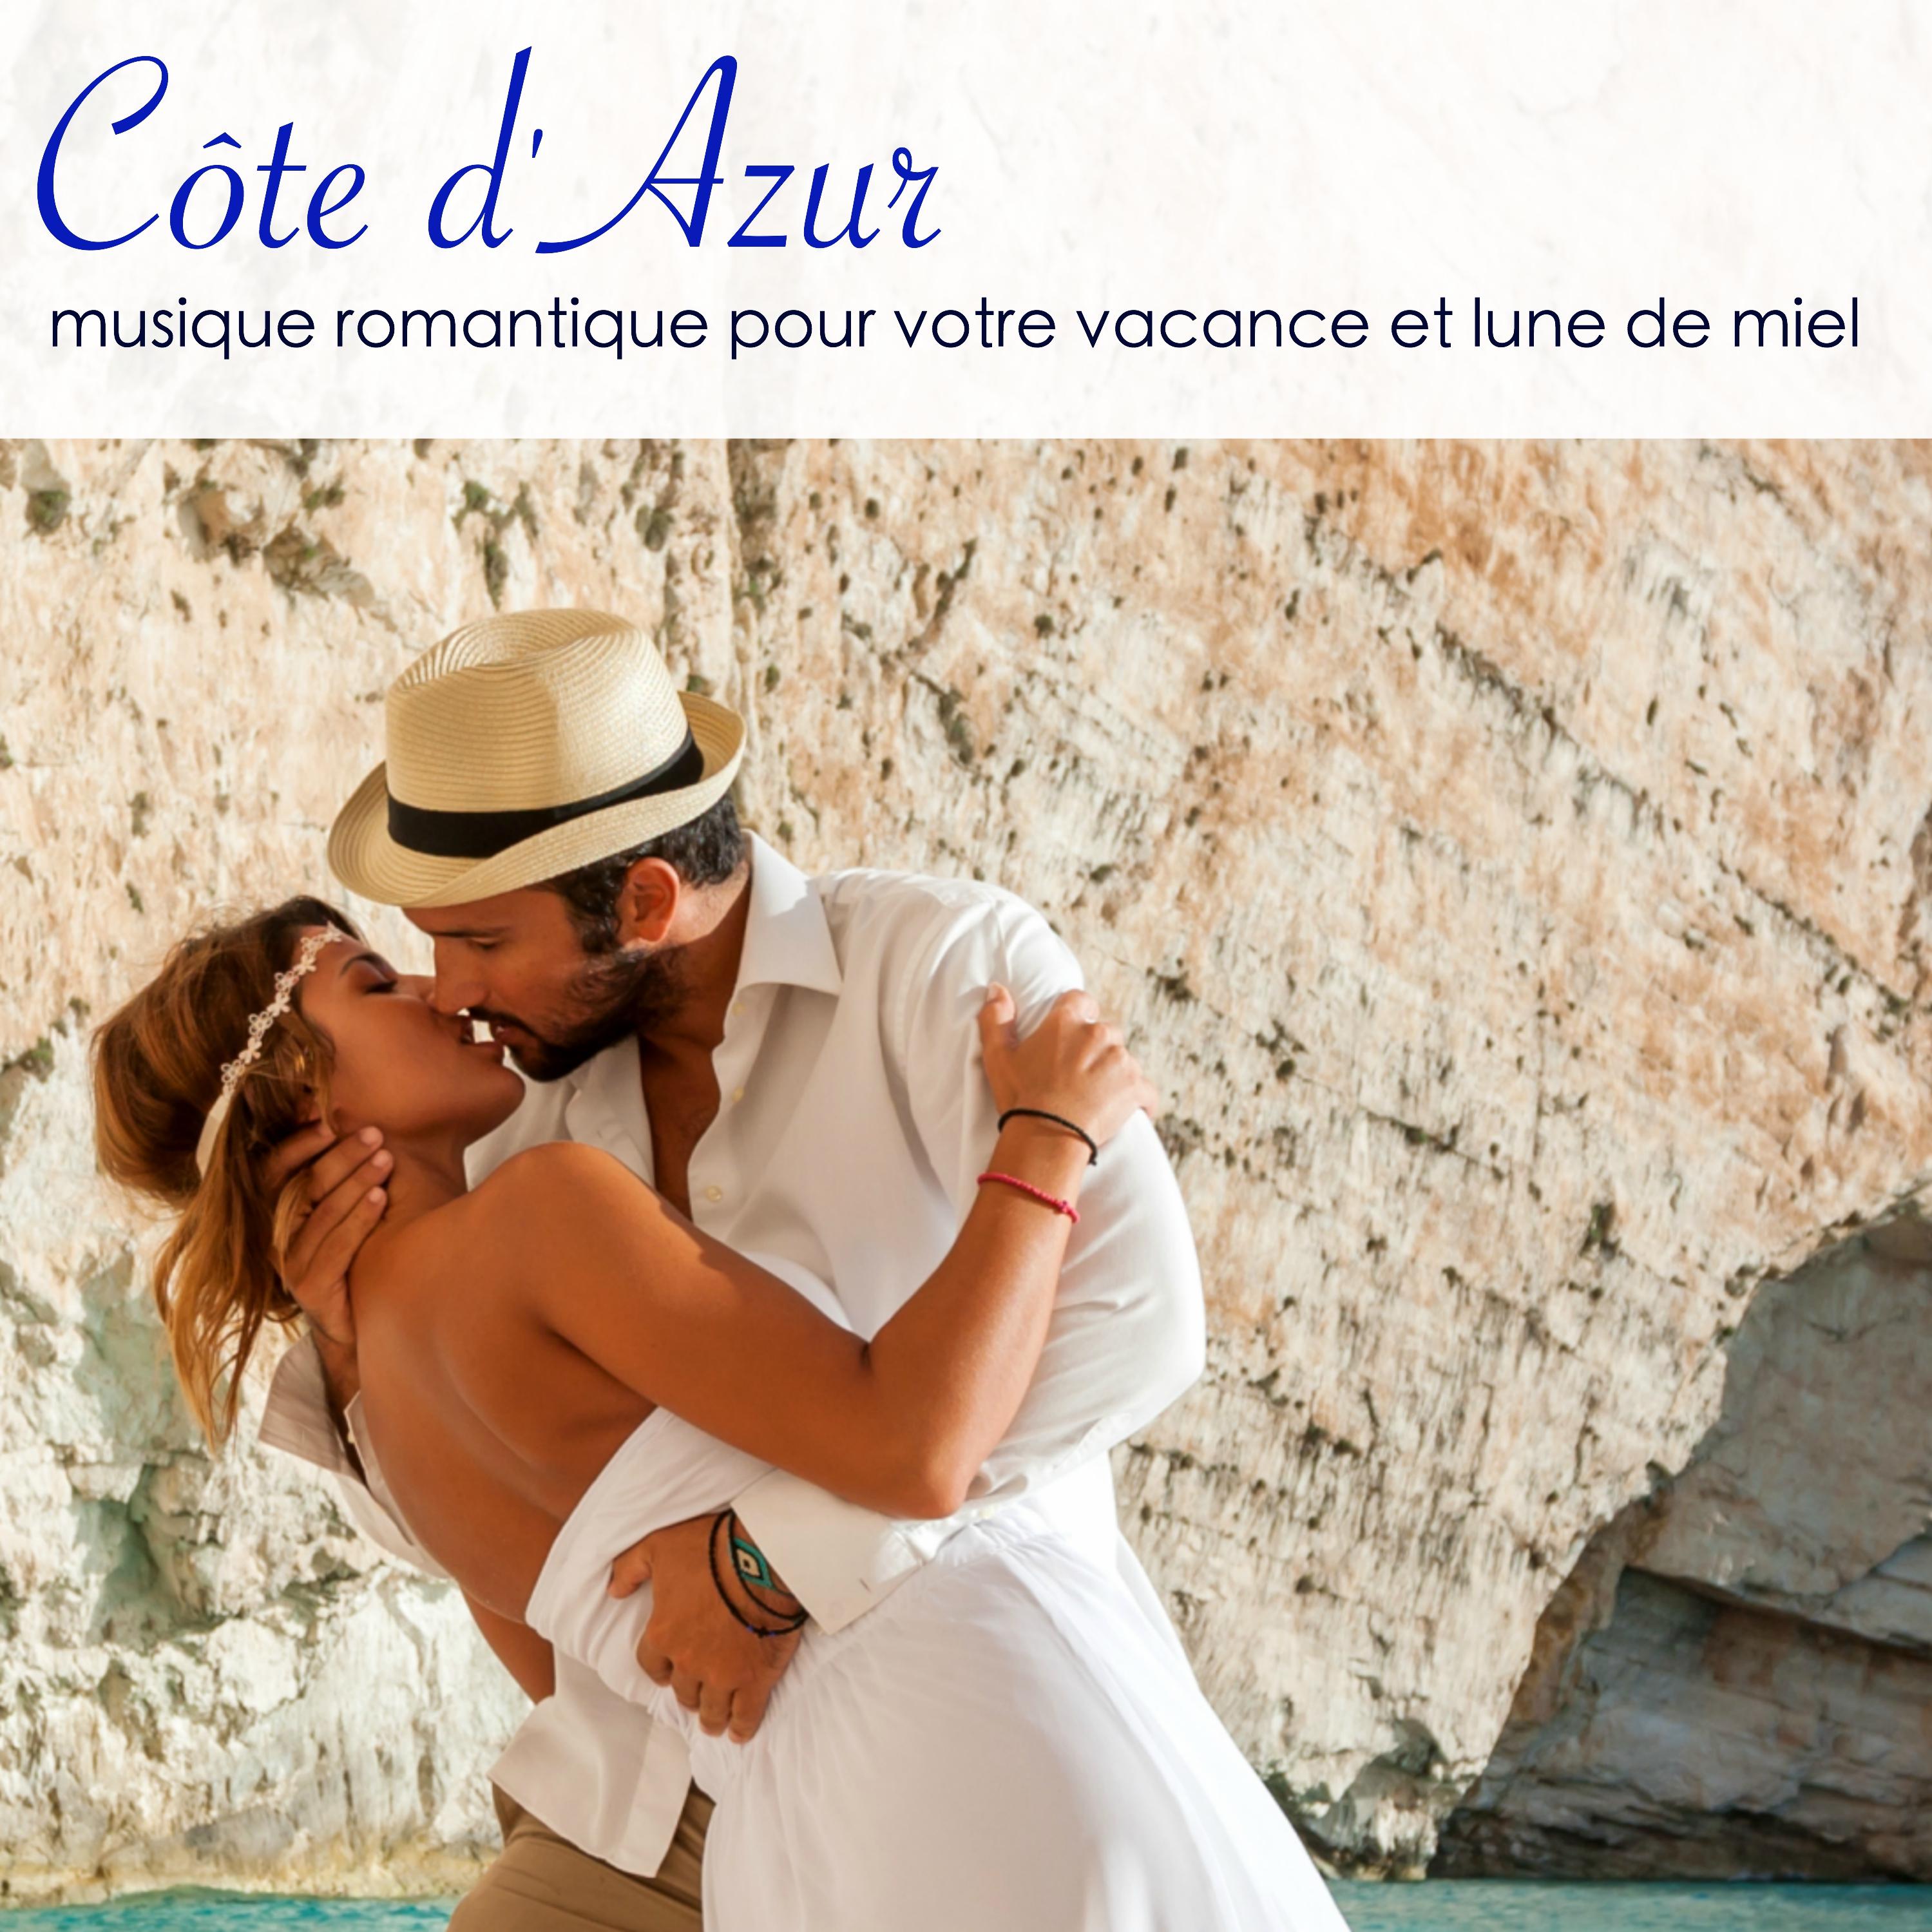 C te d' Azur  Musique romantique pour votre vacance et lune de miel